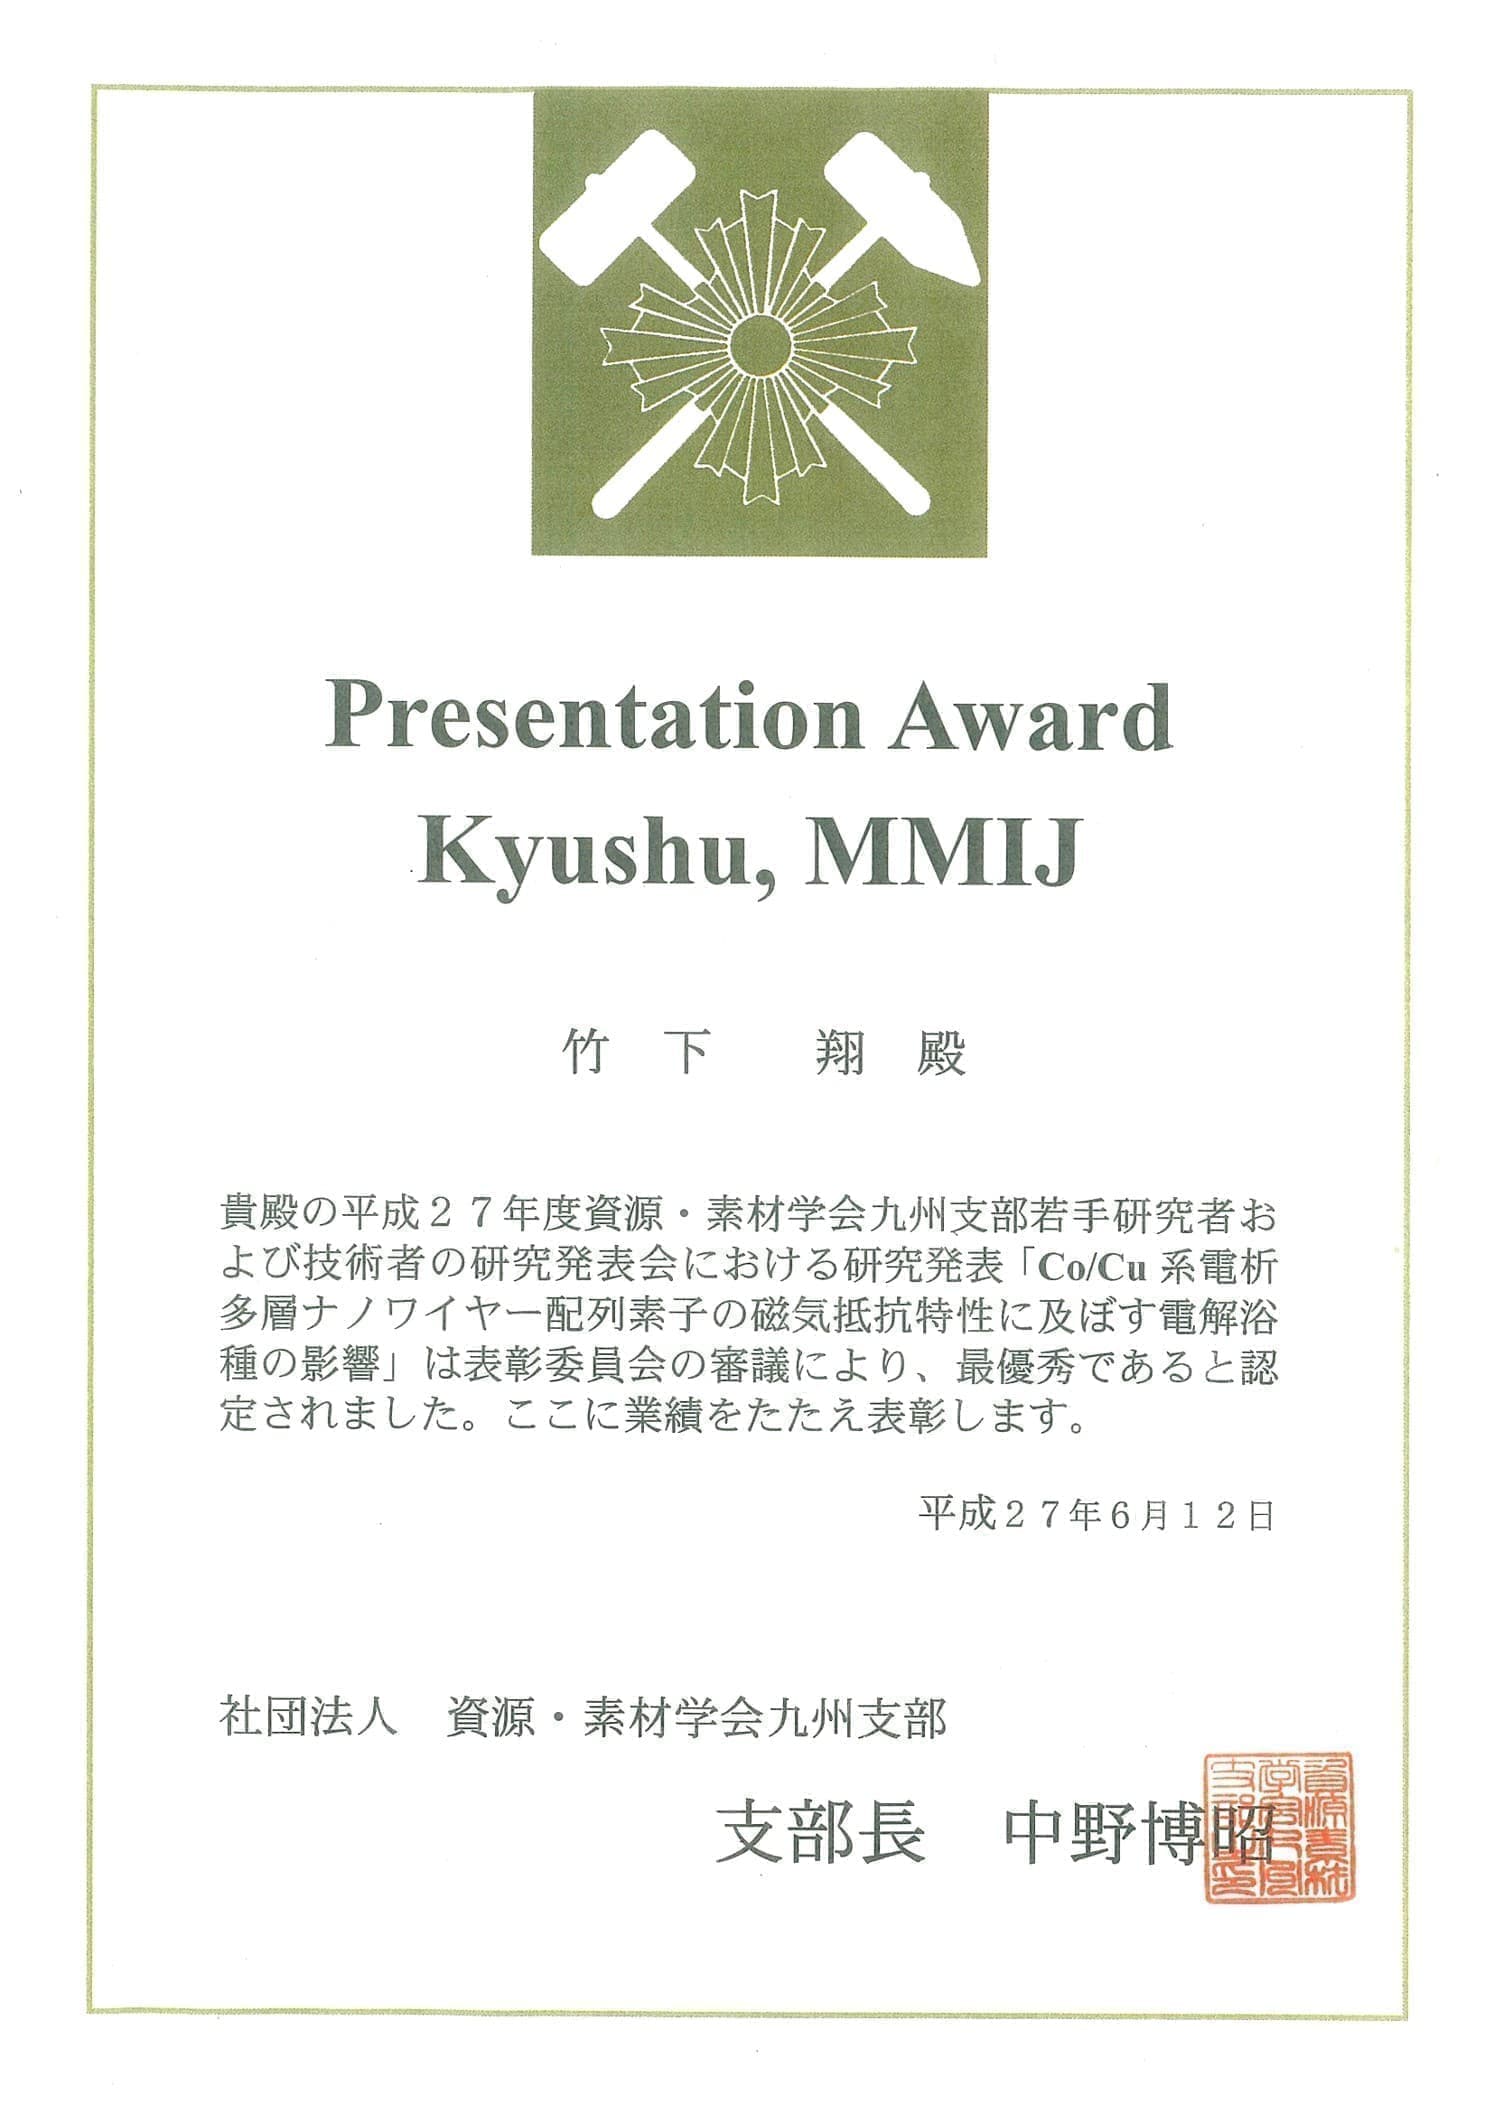 竹下翔君(M1)が、資源・素材学会九州支部若手研究者および技術者の研究発表会において、Presentation Award Kyushu, MMIJを受賞しました。2015/06/12